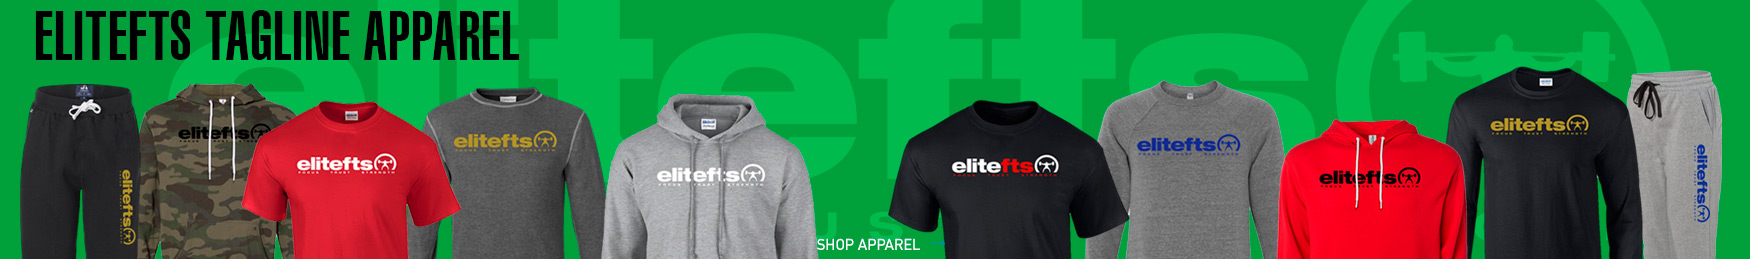 elitefts apparel